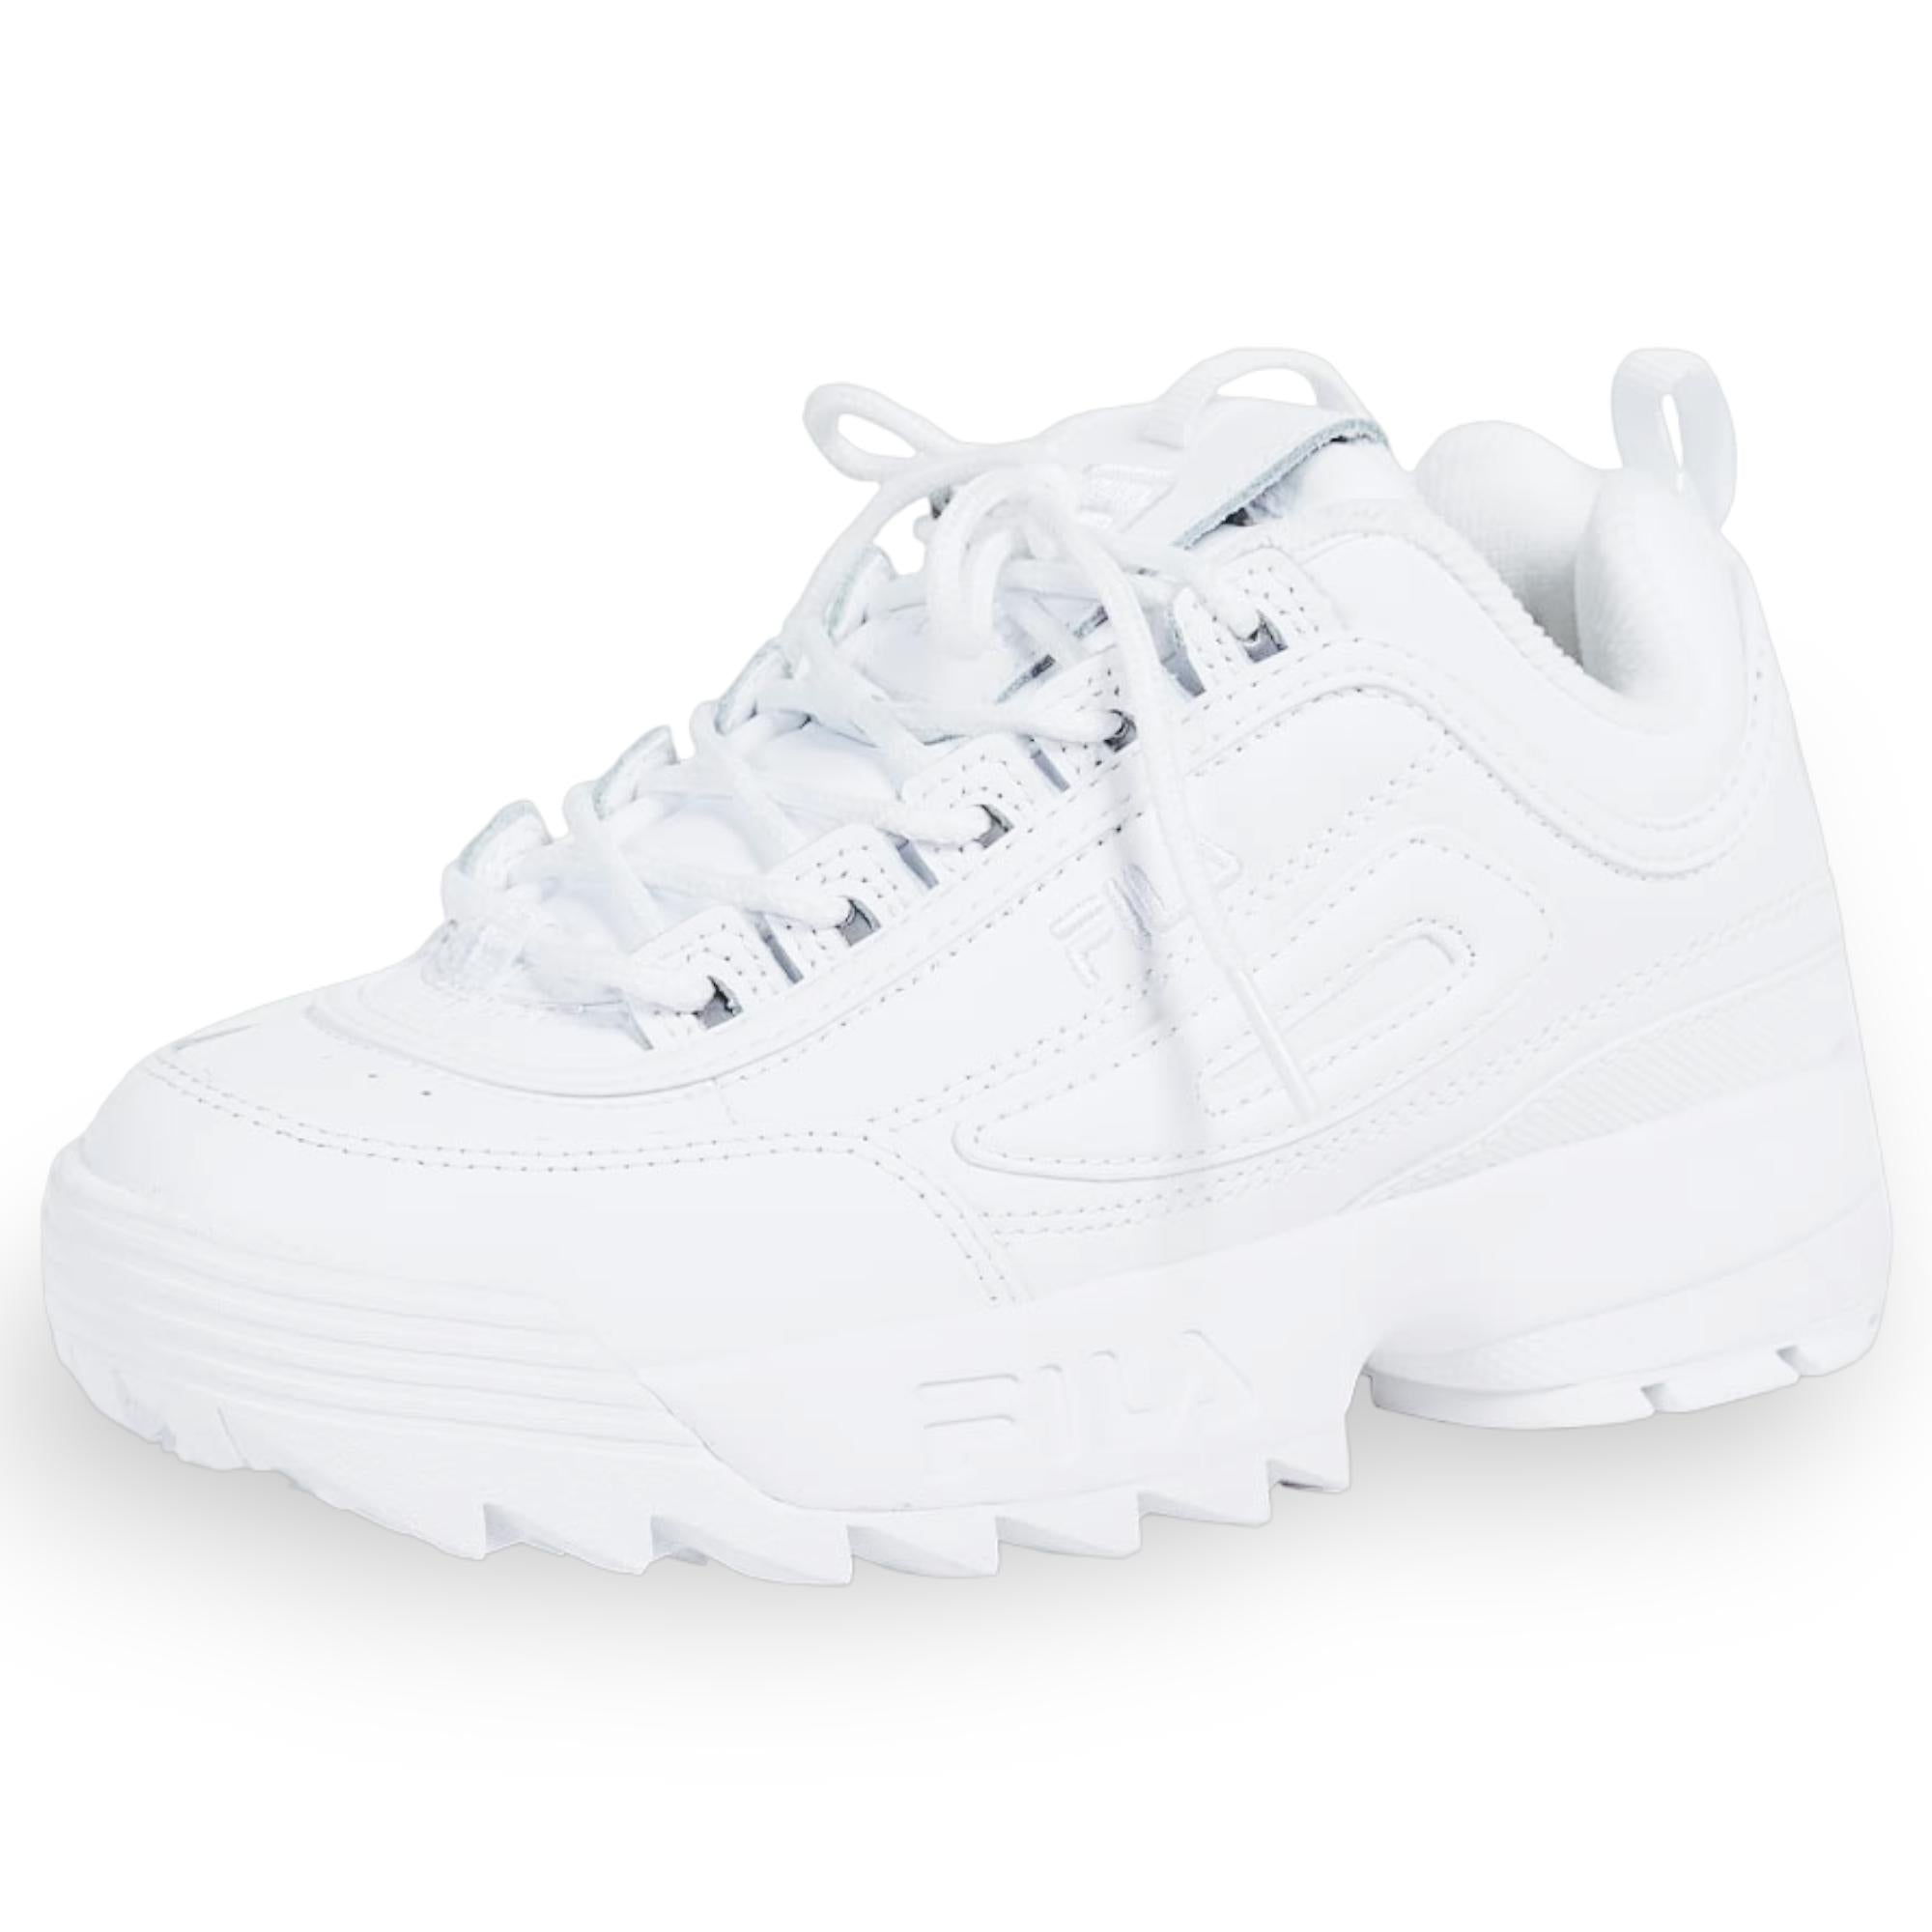 Fila Women's Disruptor 2 II Sneaker All White 1